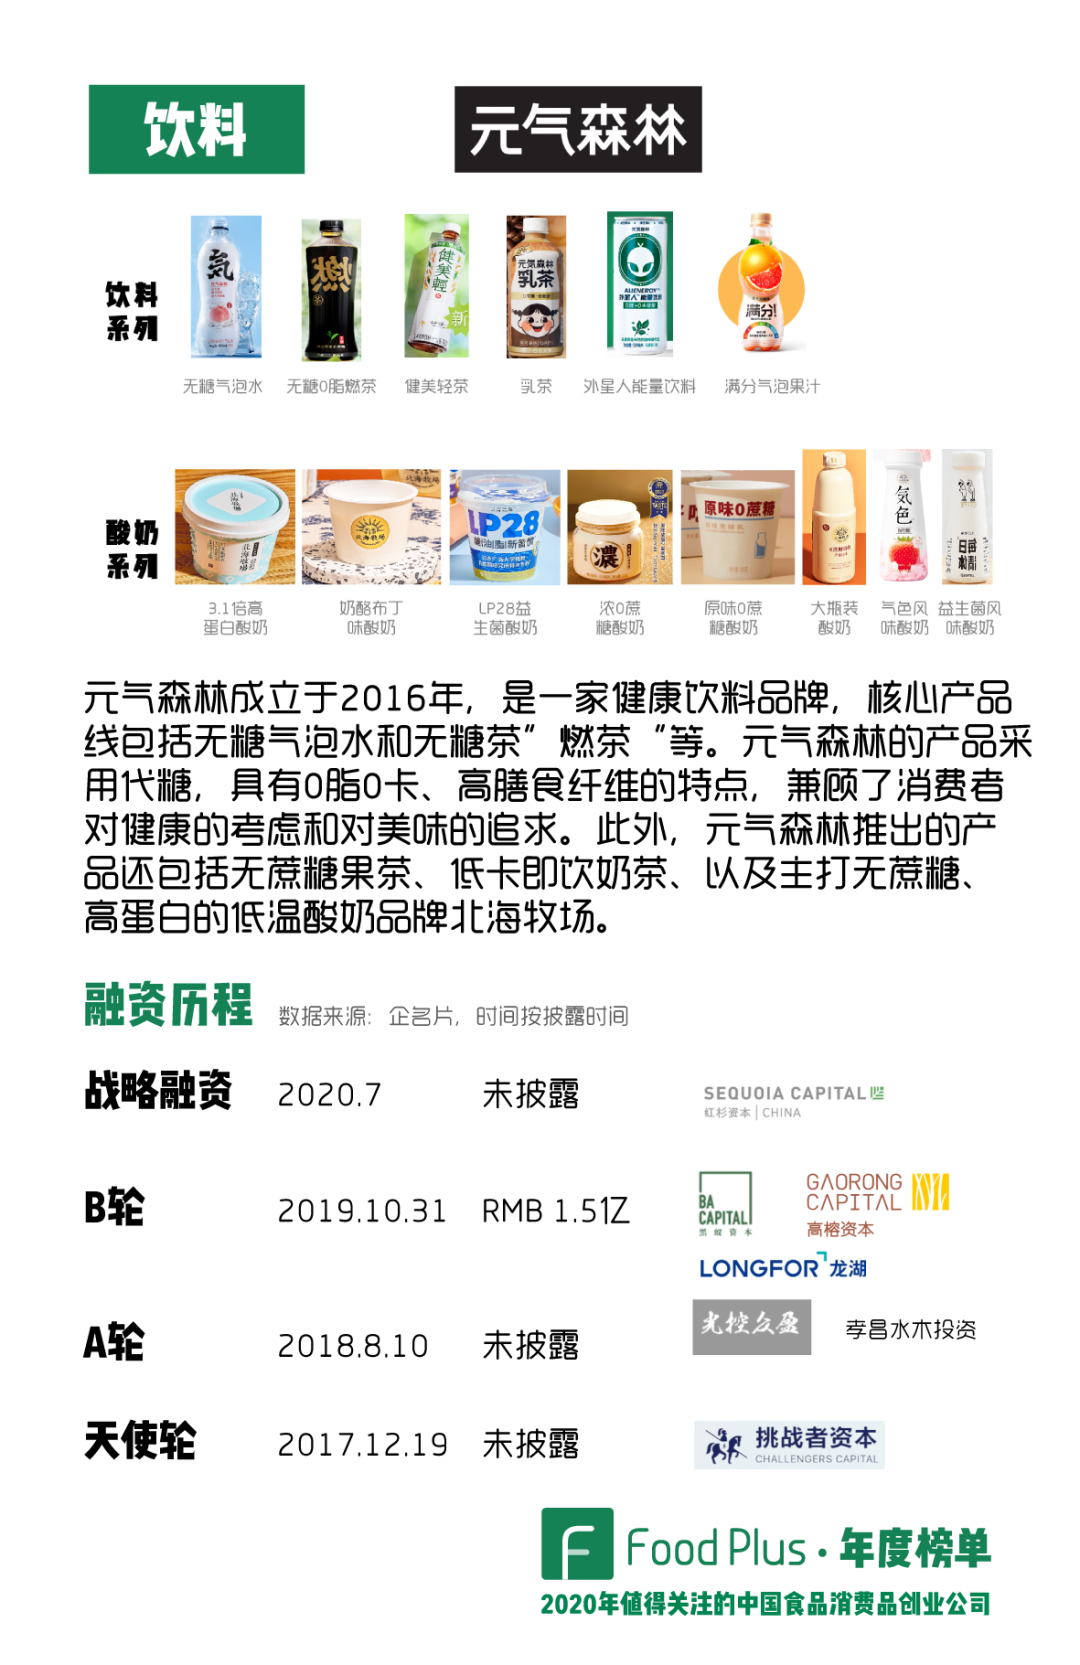 作为近年来中国最火的饮料创业品牌，元气森林已经连续三年入选我们的年度榜单（点击查看我们在2019年、2018年榜单中对元气森林的分析）。